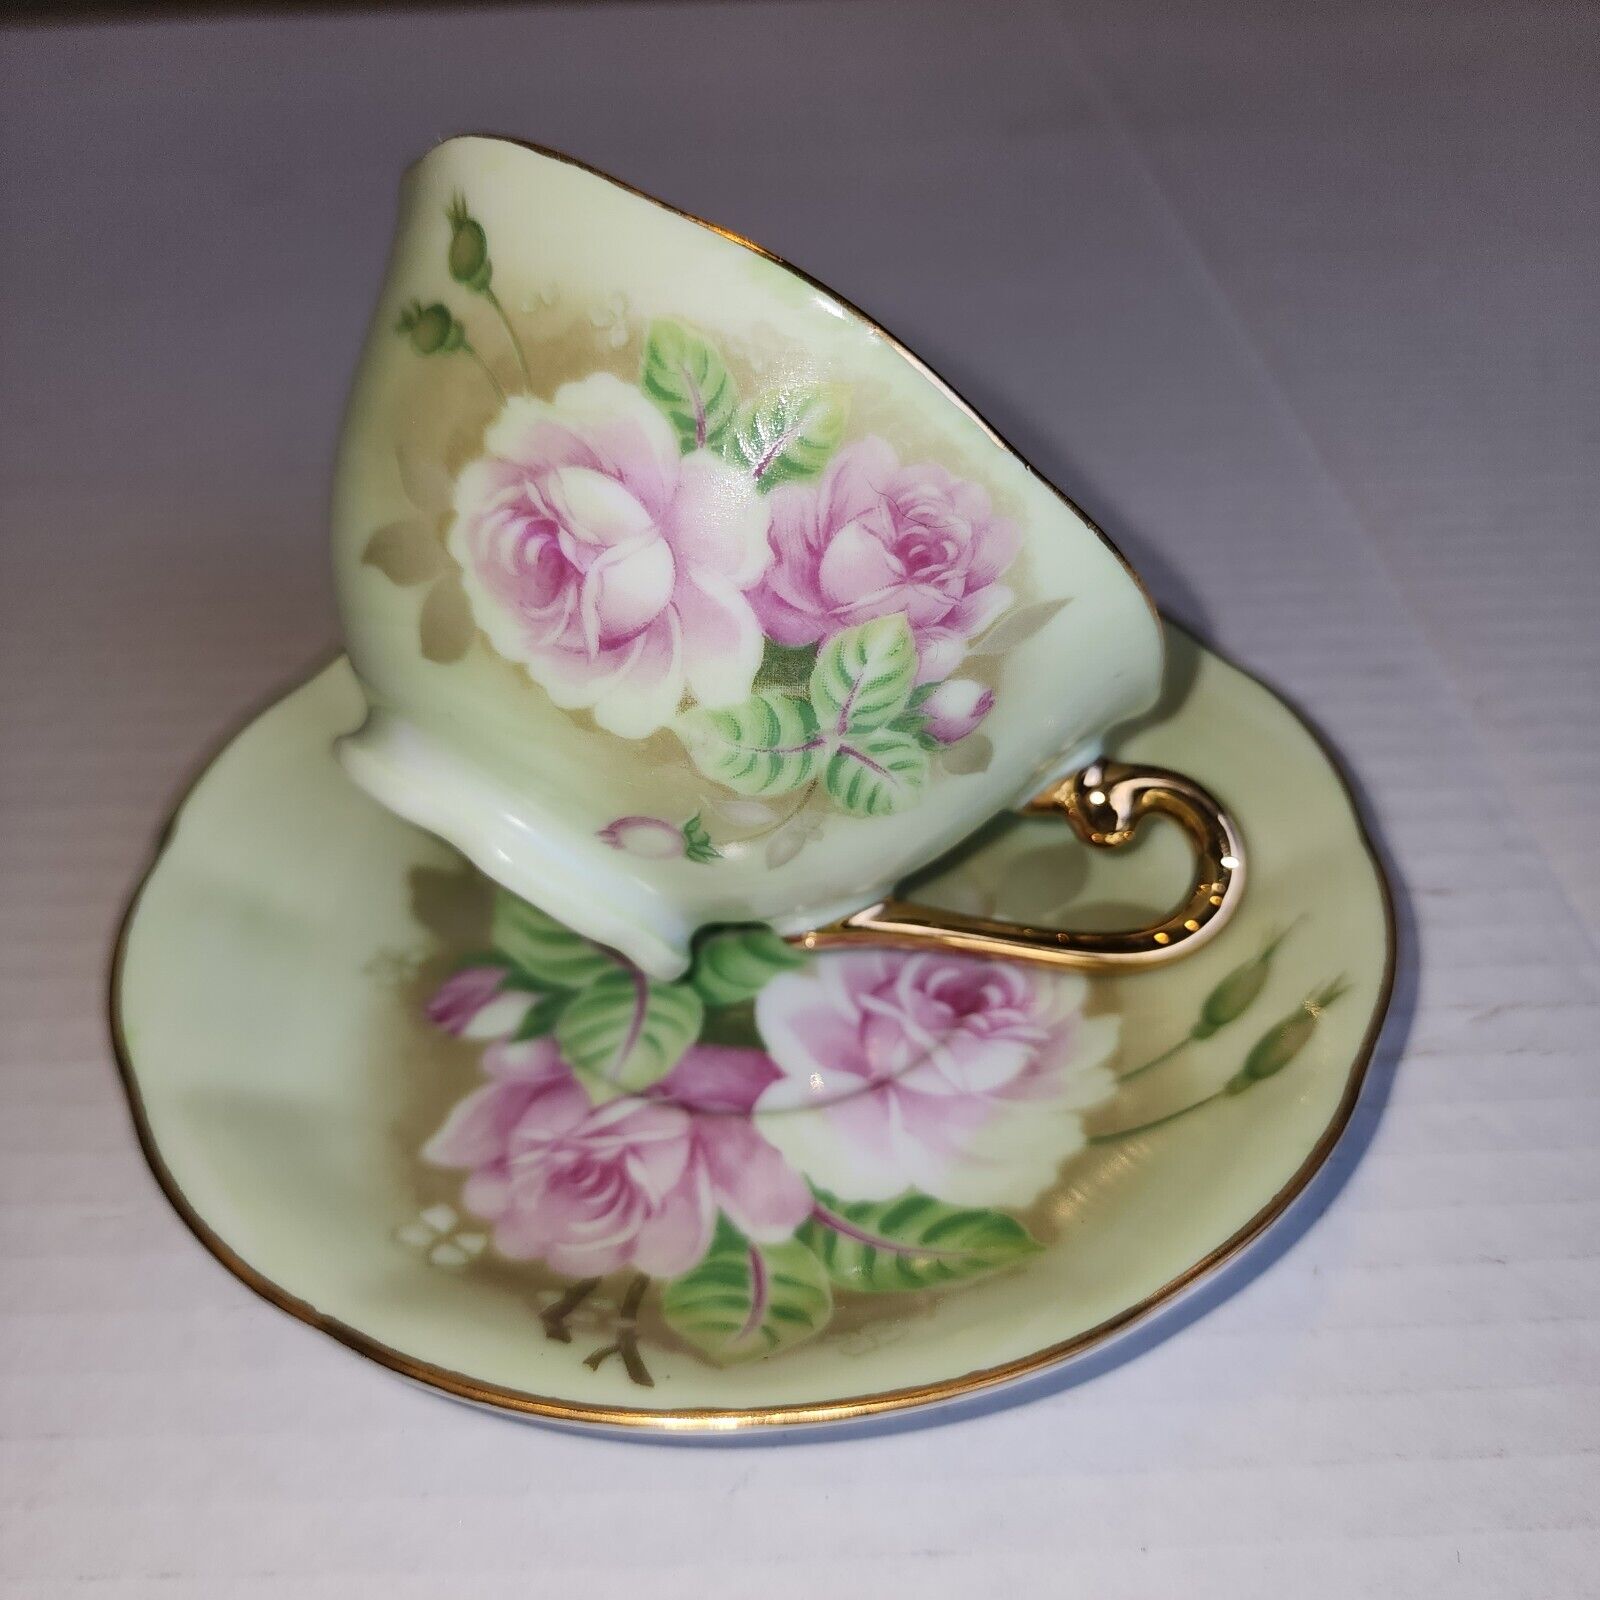 Lefton China Hand Painted Green & Pink Rose Teacup & Saucer Set, Vintage